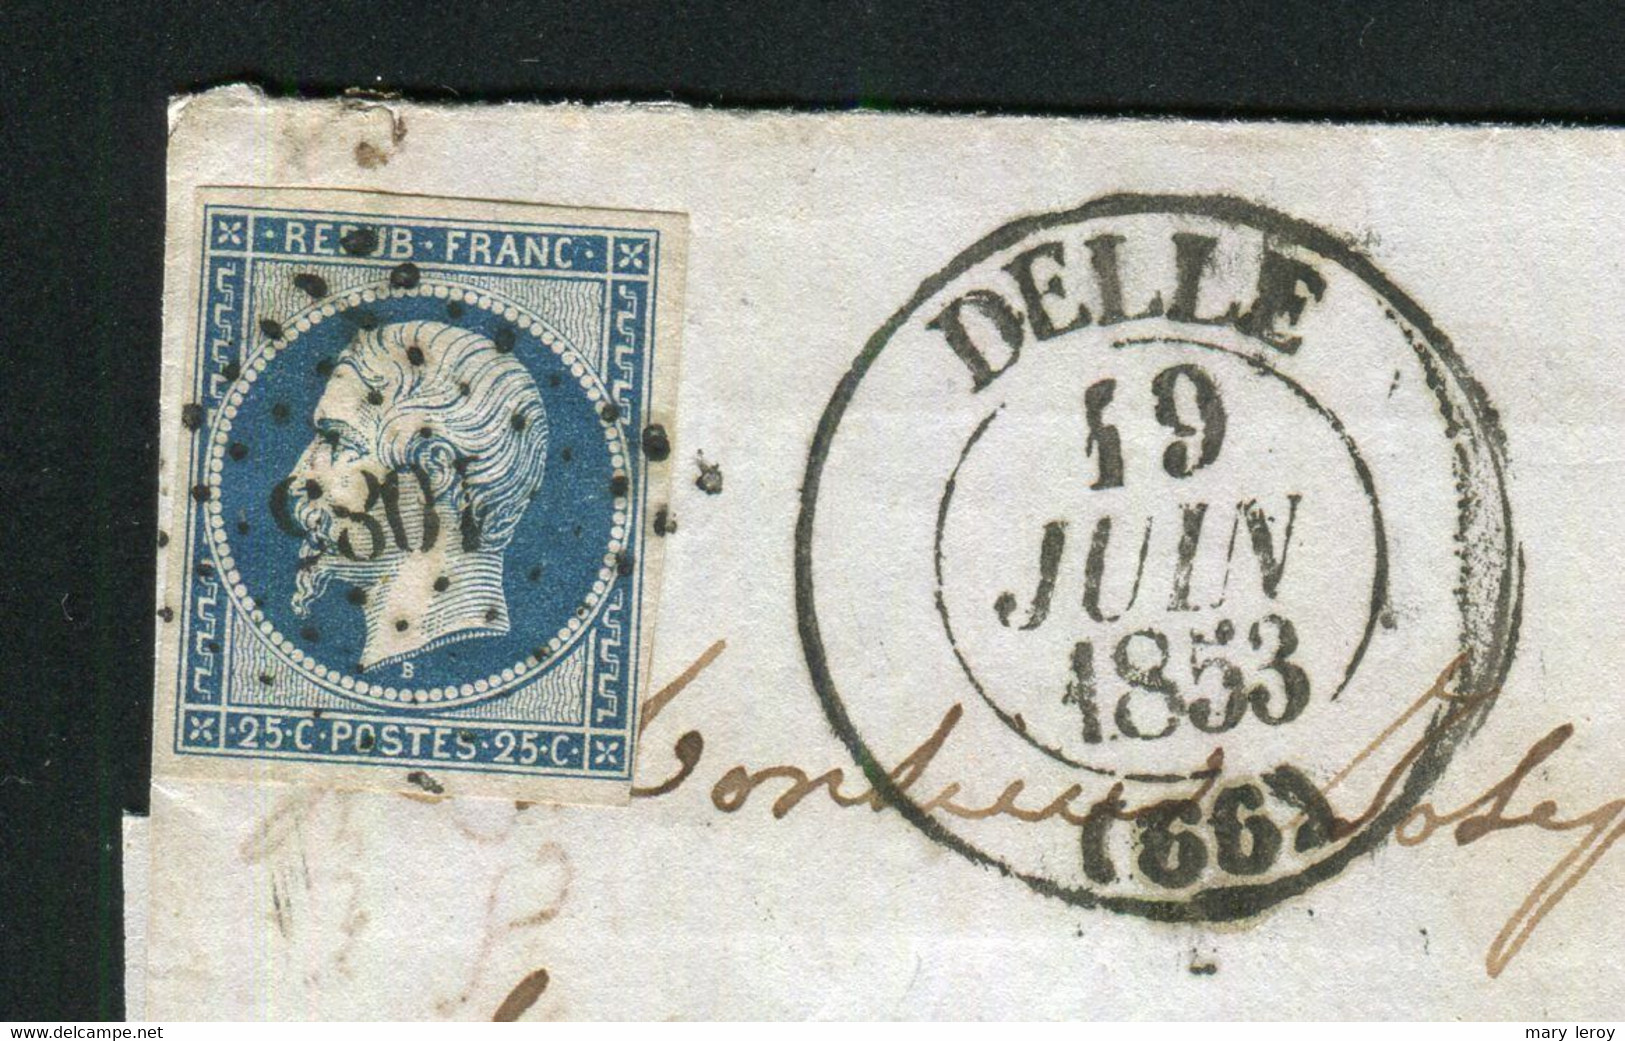 Rare Lettre De Delle Pour Langres ( 1853 ) Avec Un N° 10 Présidence - 1852 Louis-Napoleon